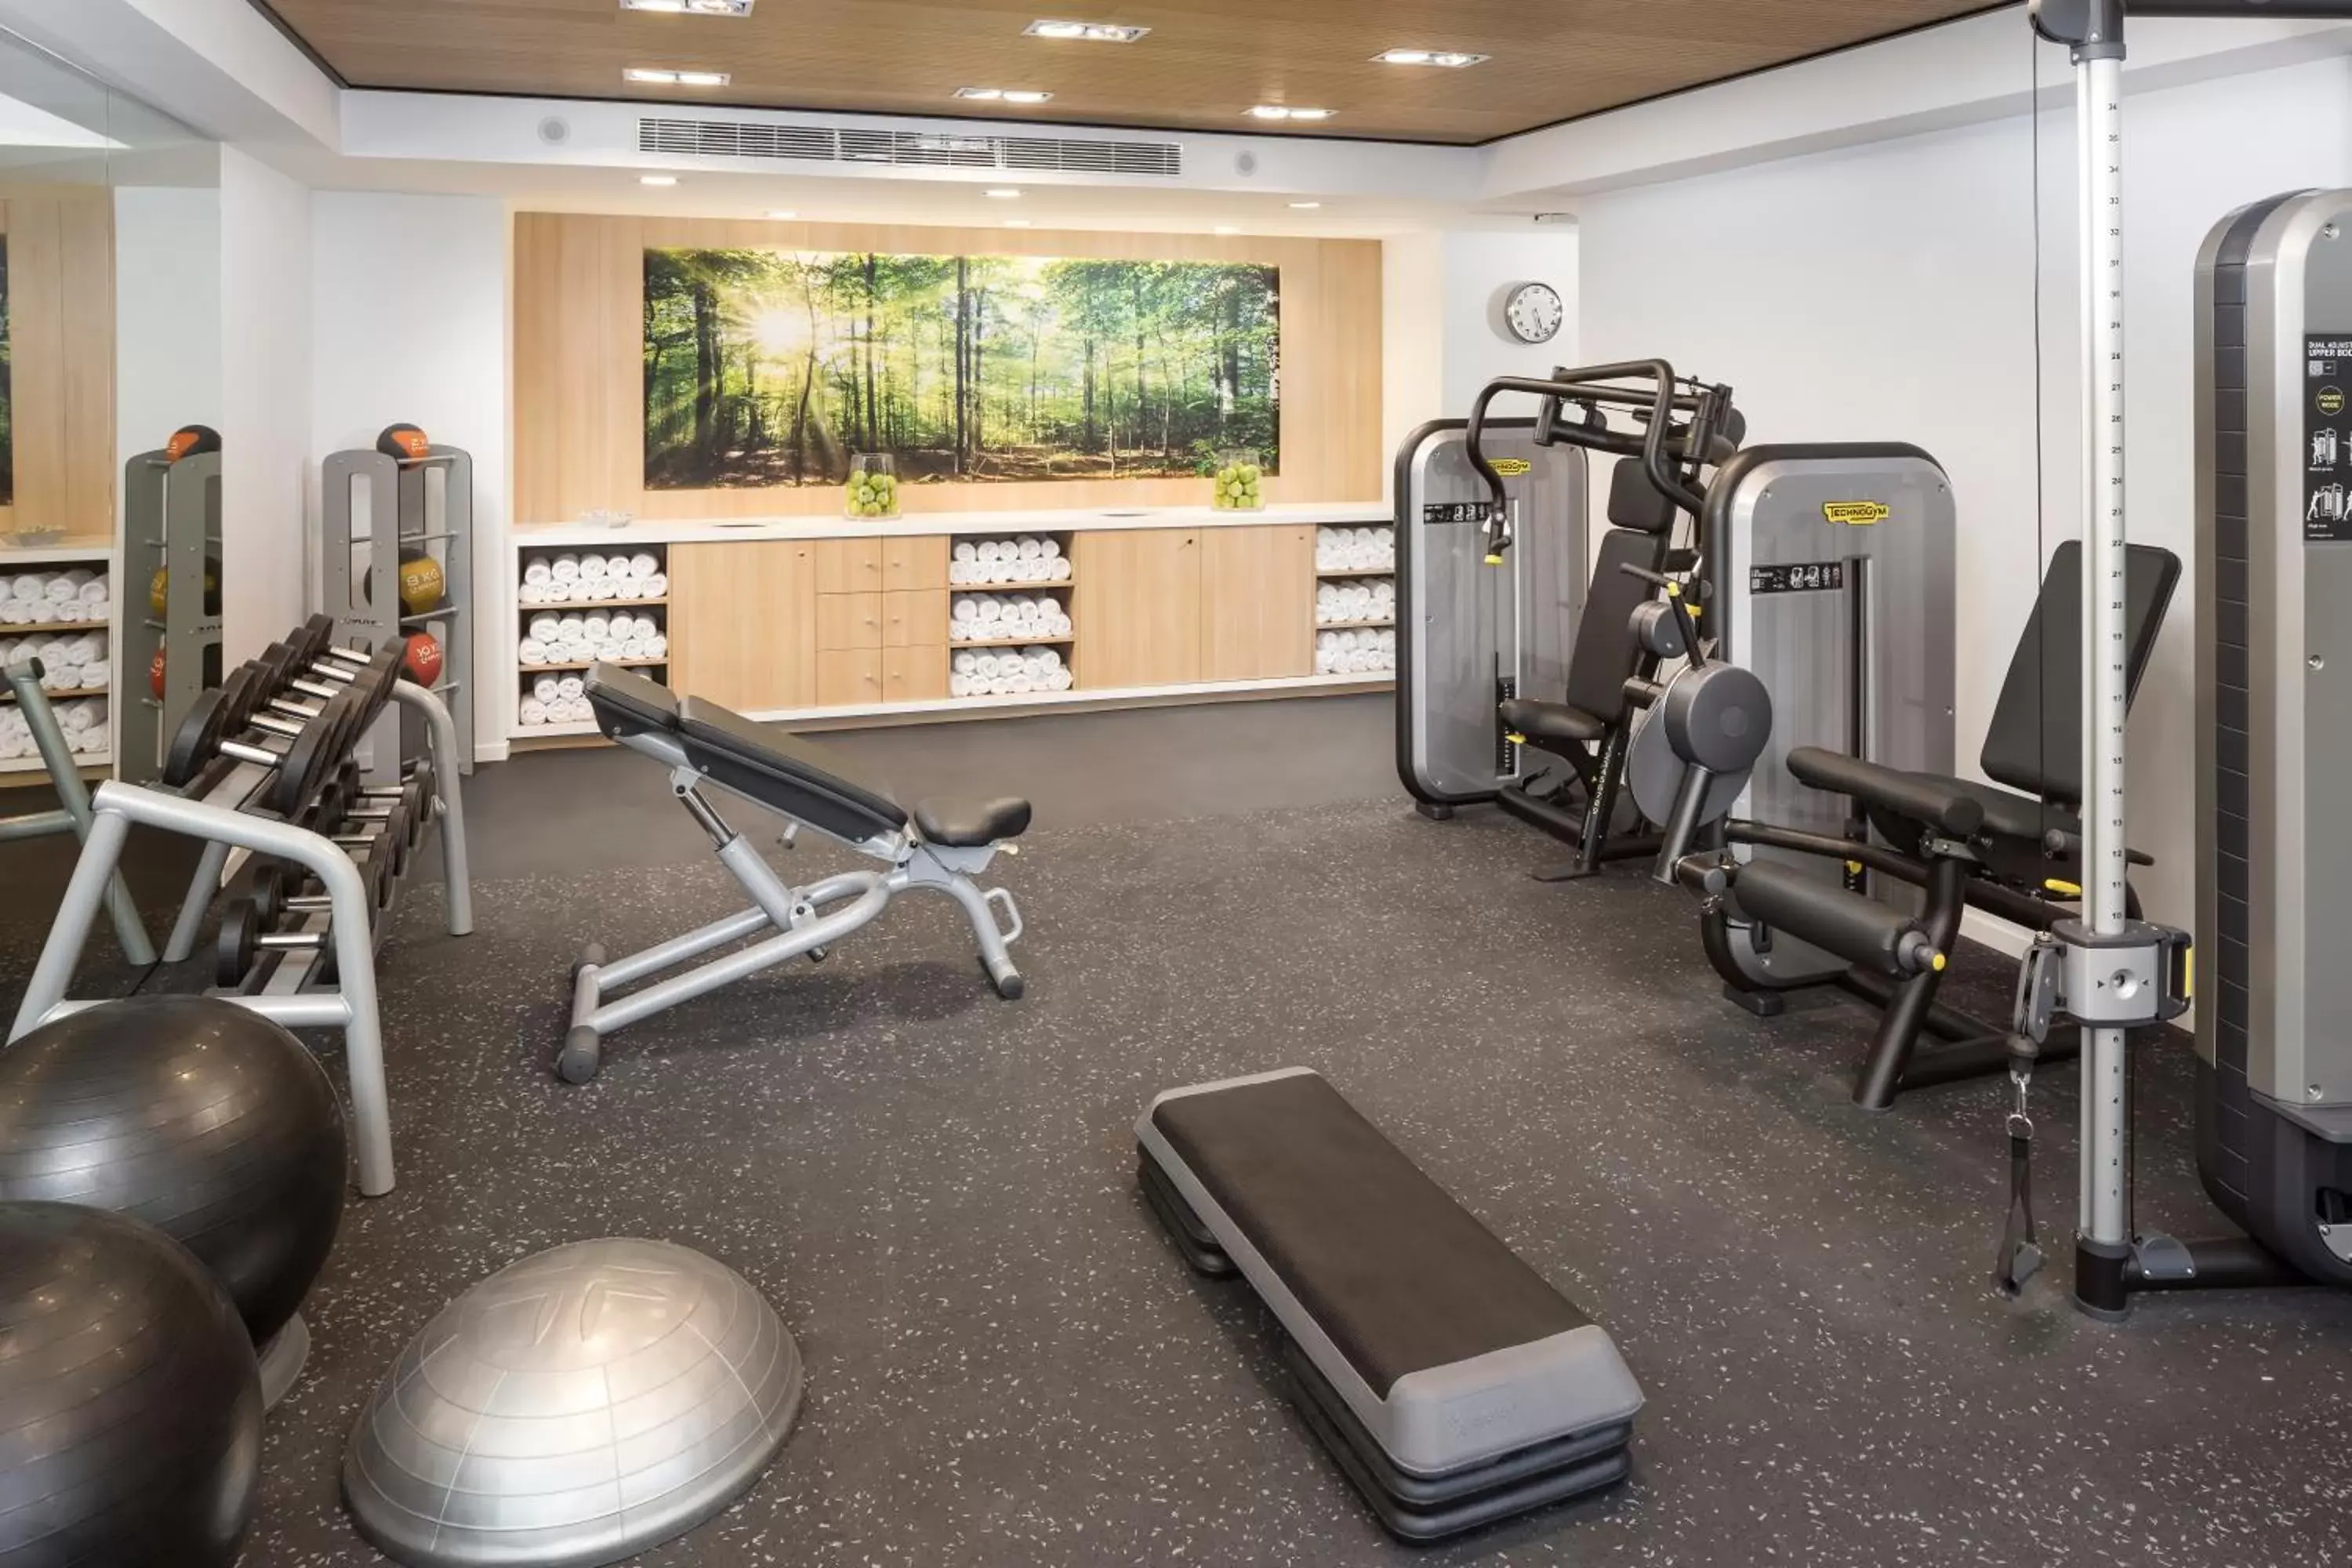 Fitness centre/facilities, Fitness Center/Facilities in Melia Castilla